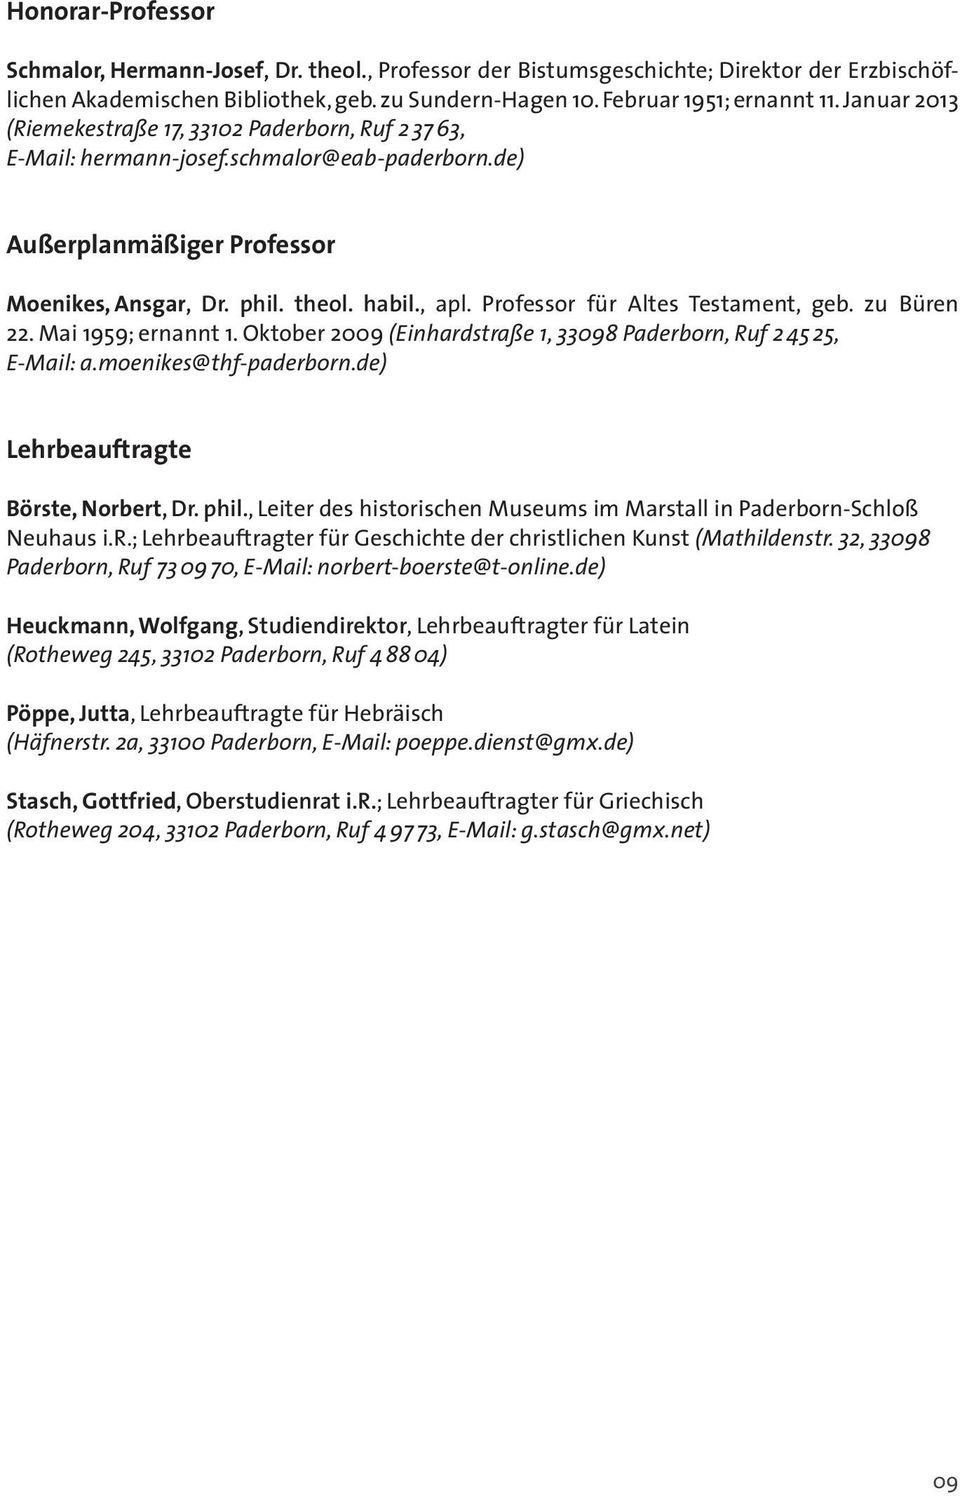 Professor für Altes Testament, geb. zu Büren 22. Mai 1959; ernannt 1. Oktober 2009 (Einhardstraße 1, 33098 Paderborn, Ruf 2 45 25, E-Mail: a.moenikes@thf-paderborn.